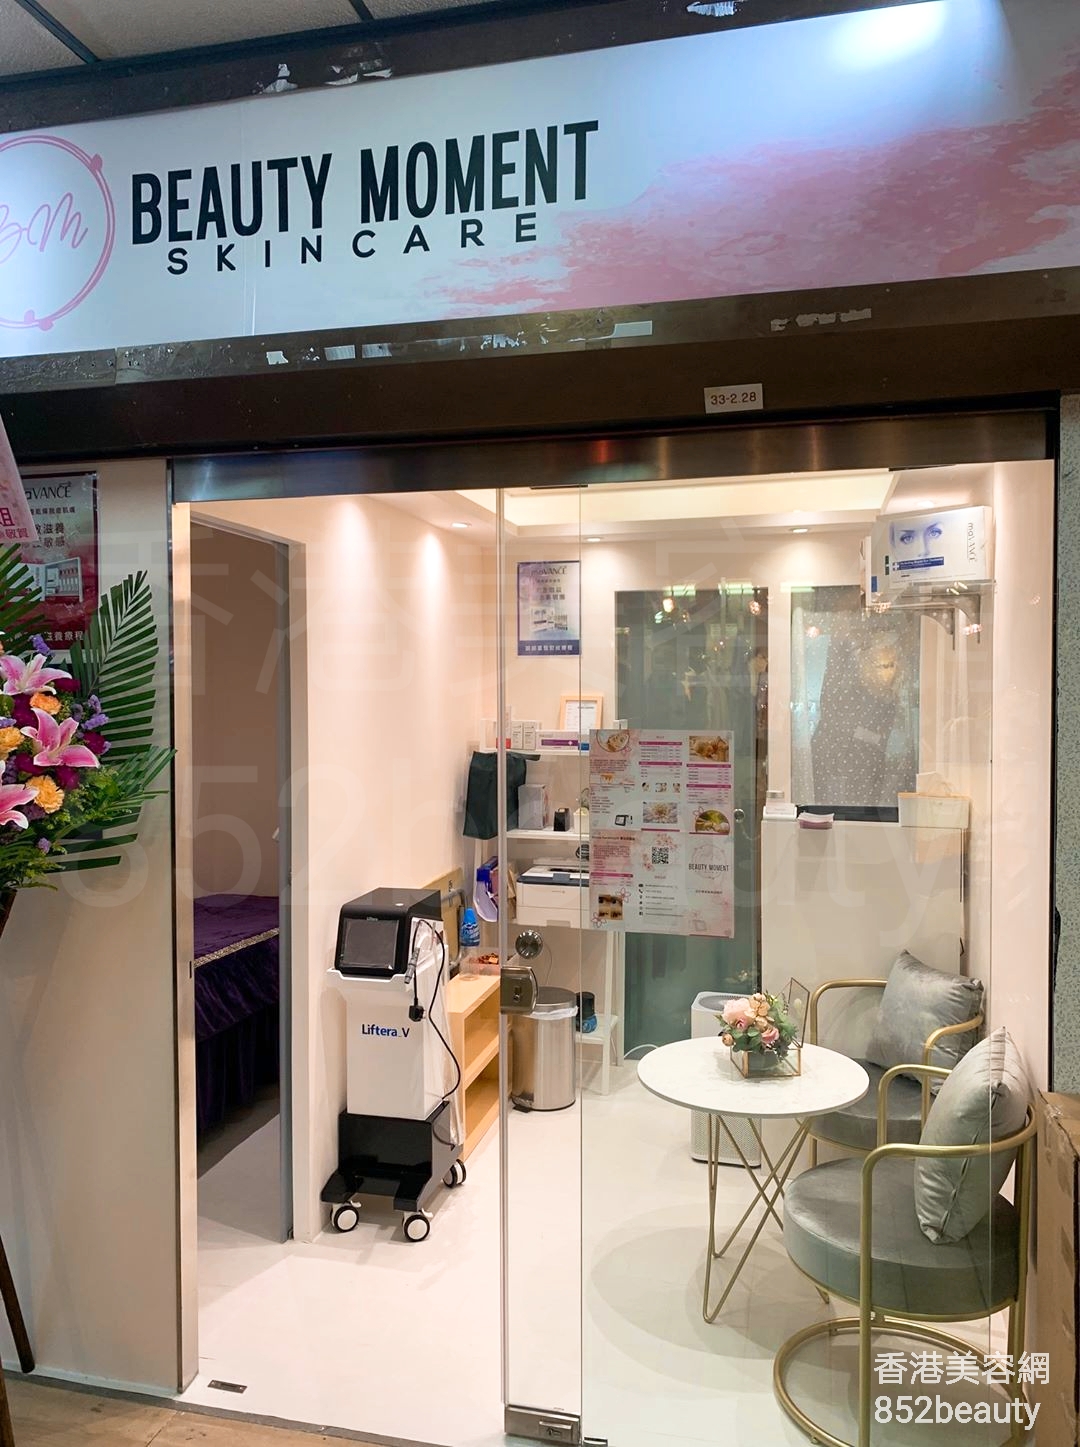 醫學美容: Beauty Moment Skincare Centre